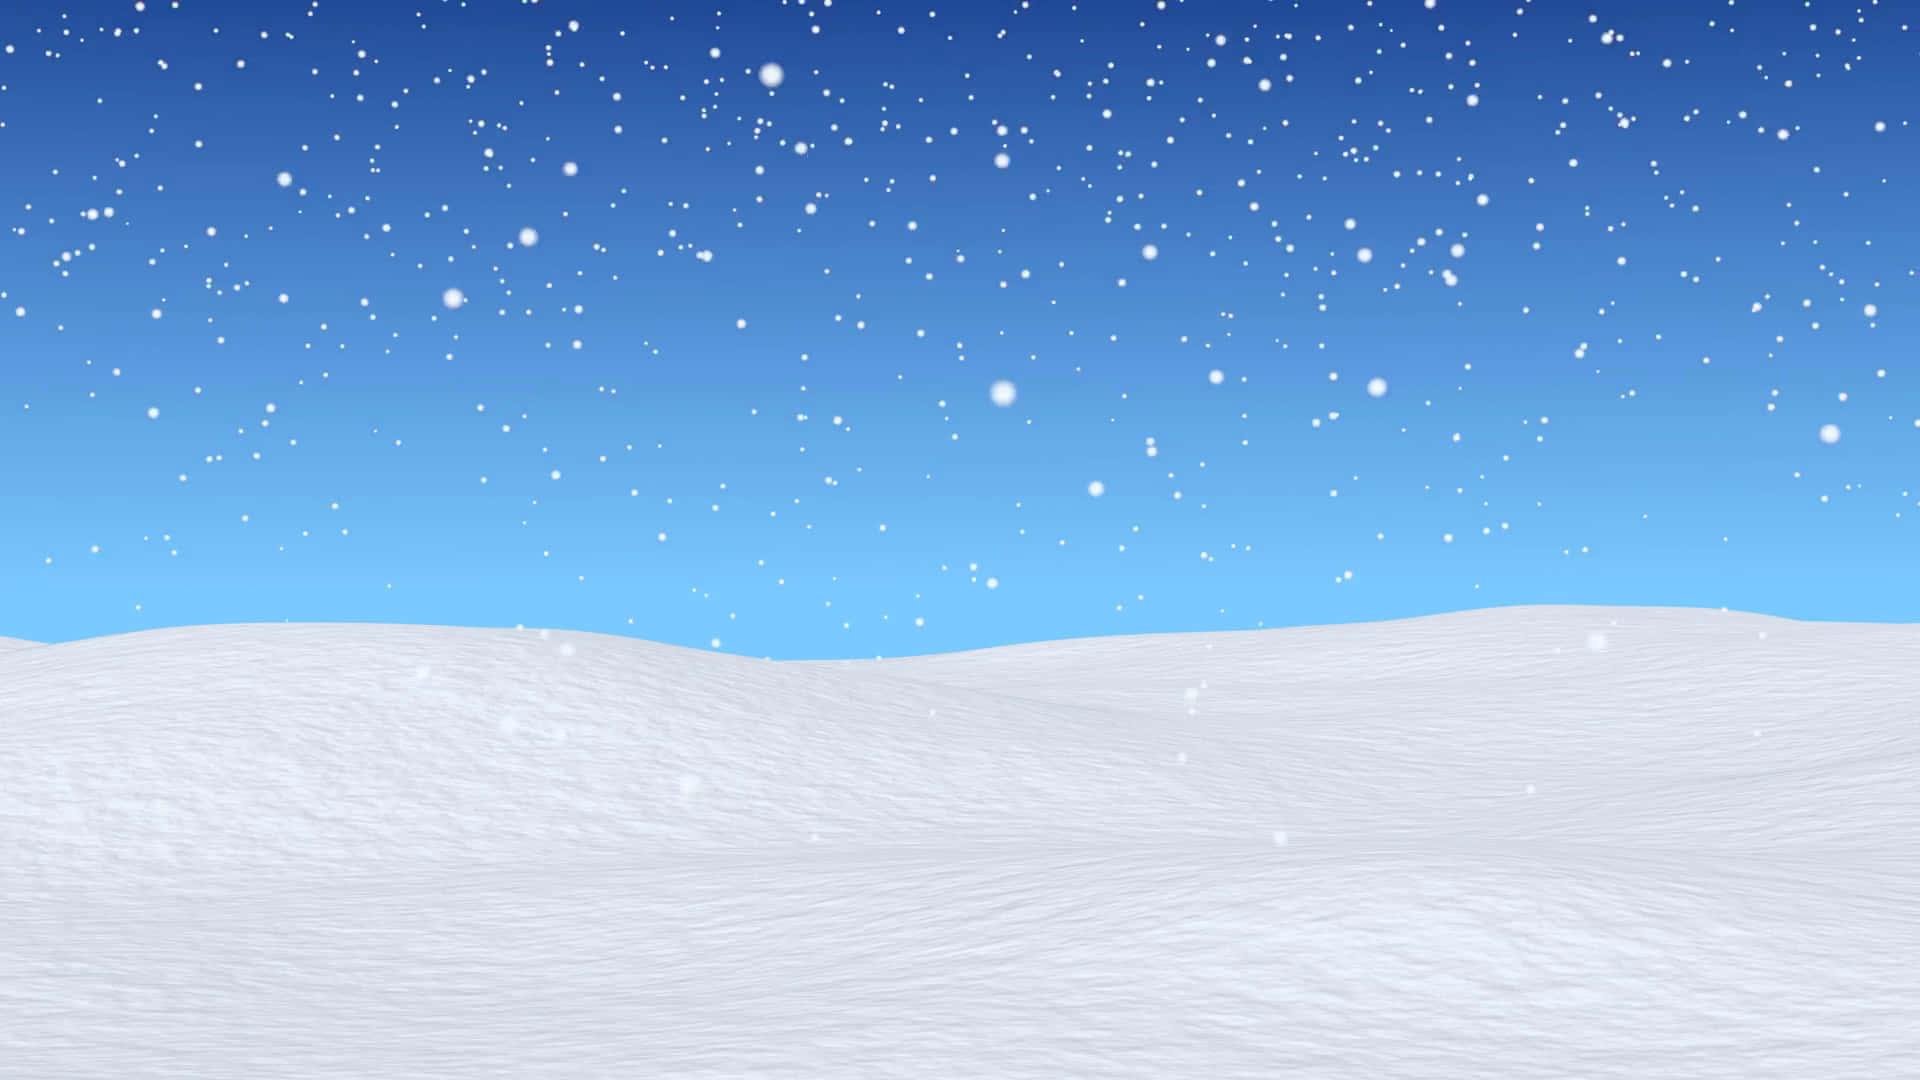 "Serene Snowy Backdrop"